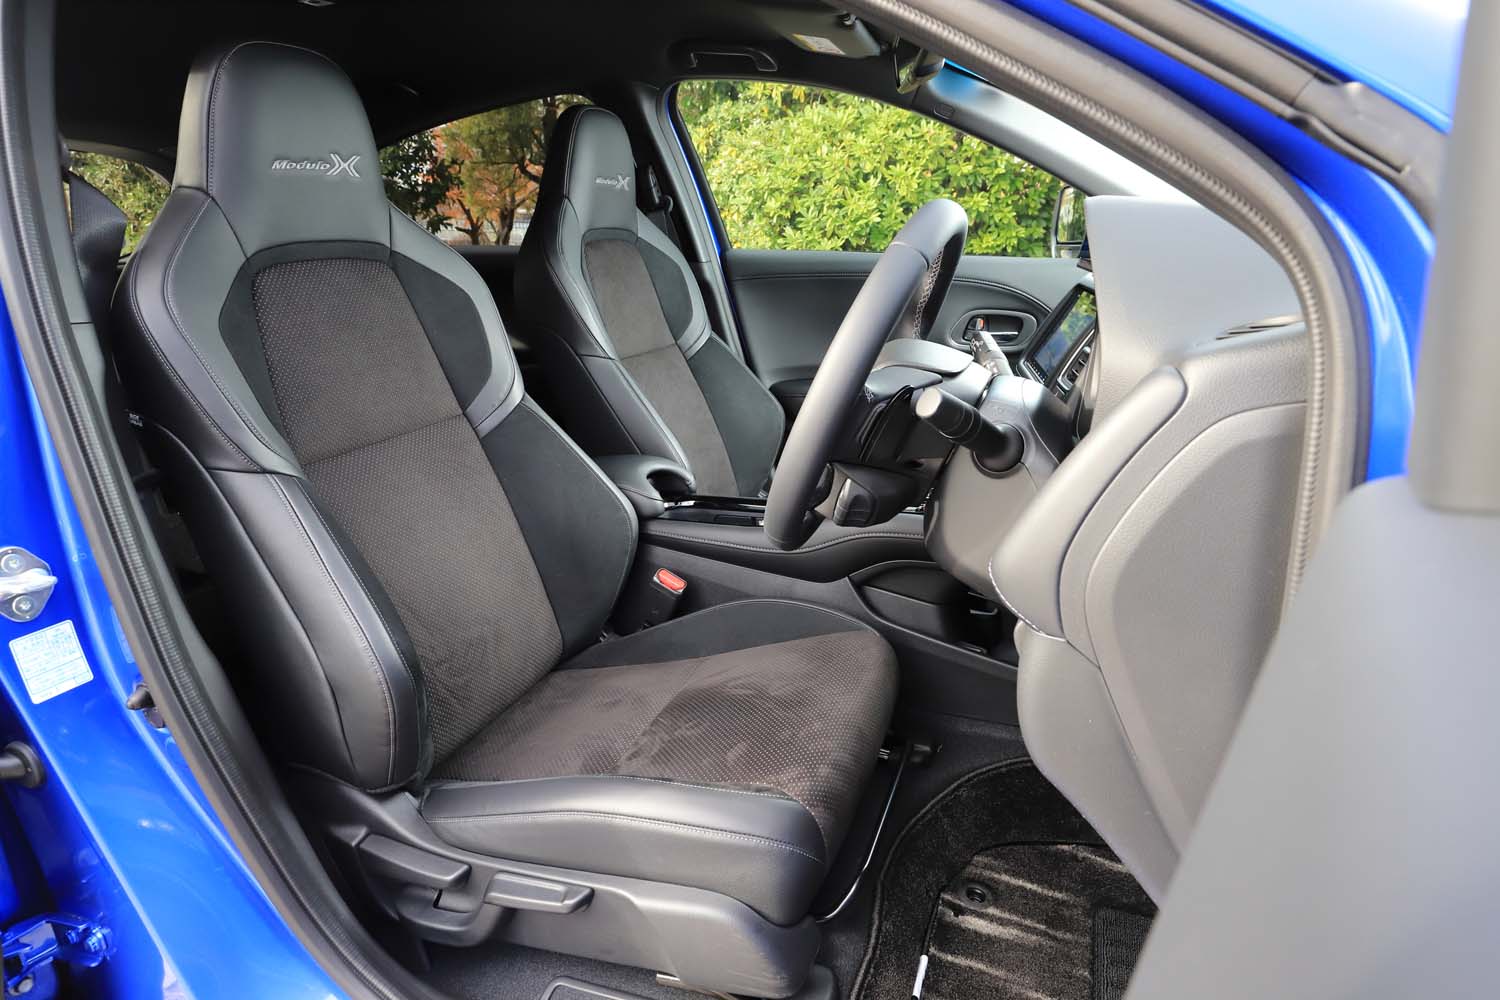 「ヴェゼル モデューロX」には、フレームから新規開発した専用フロントスポーツシートが装着される。表皮は「プライムスムース」および「ラックススエード」で、シートヒーターも備わる。